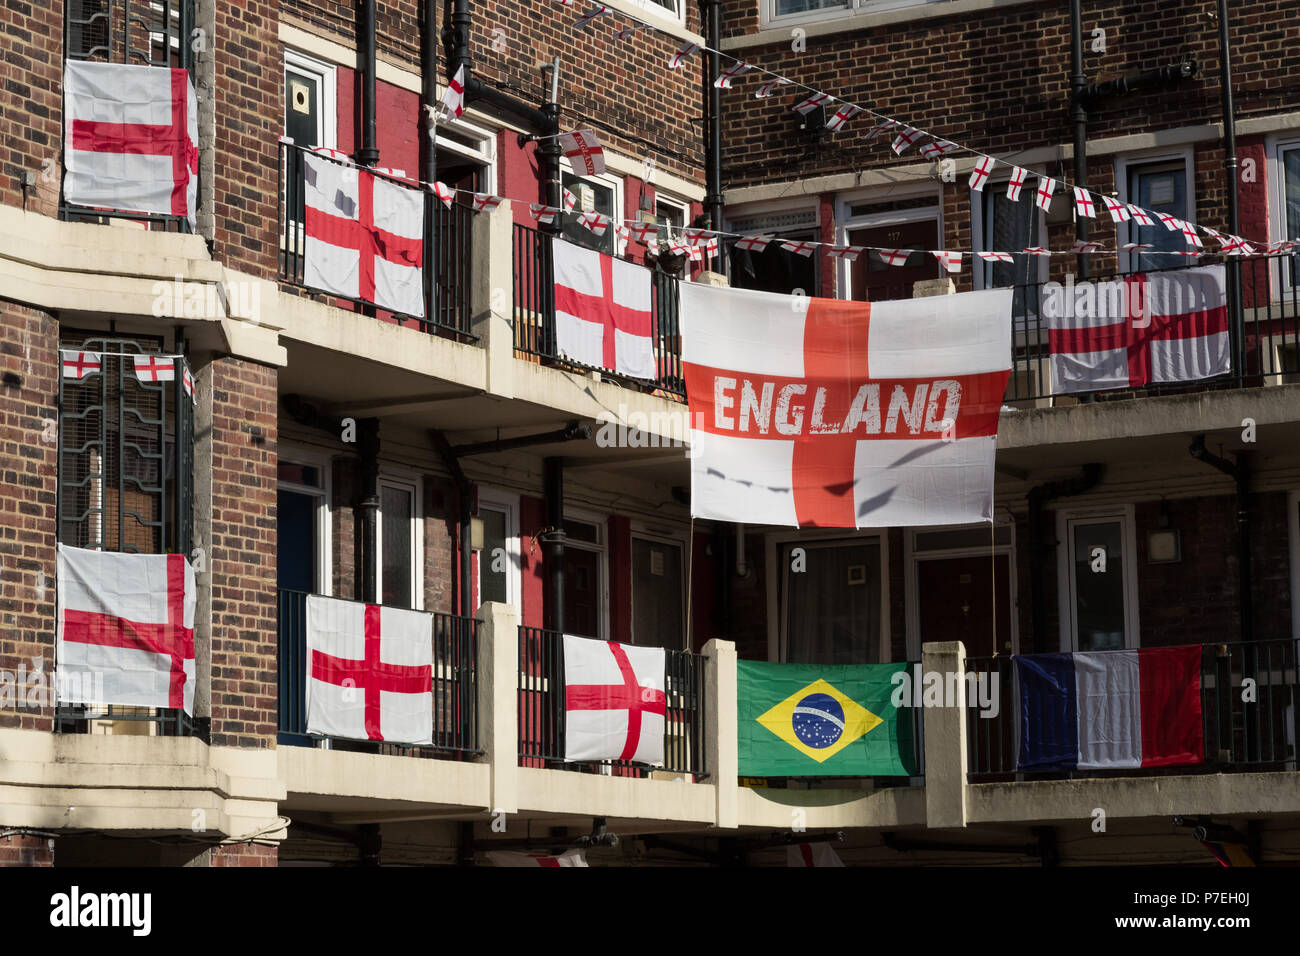 Les habitants de la patriotique Kirby Estate dans Bermondsey célébrer la Coupe du Monde de la FIFA 2018 la fièvre par couvrant leur domaine avec plus de 300 drapeaux de l'Angleterre. Banque D'Images